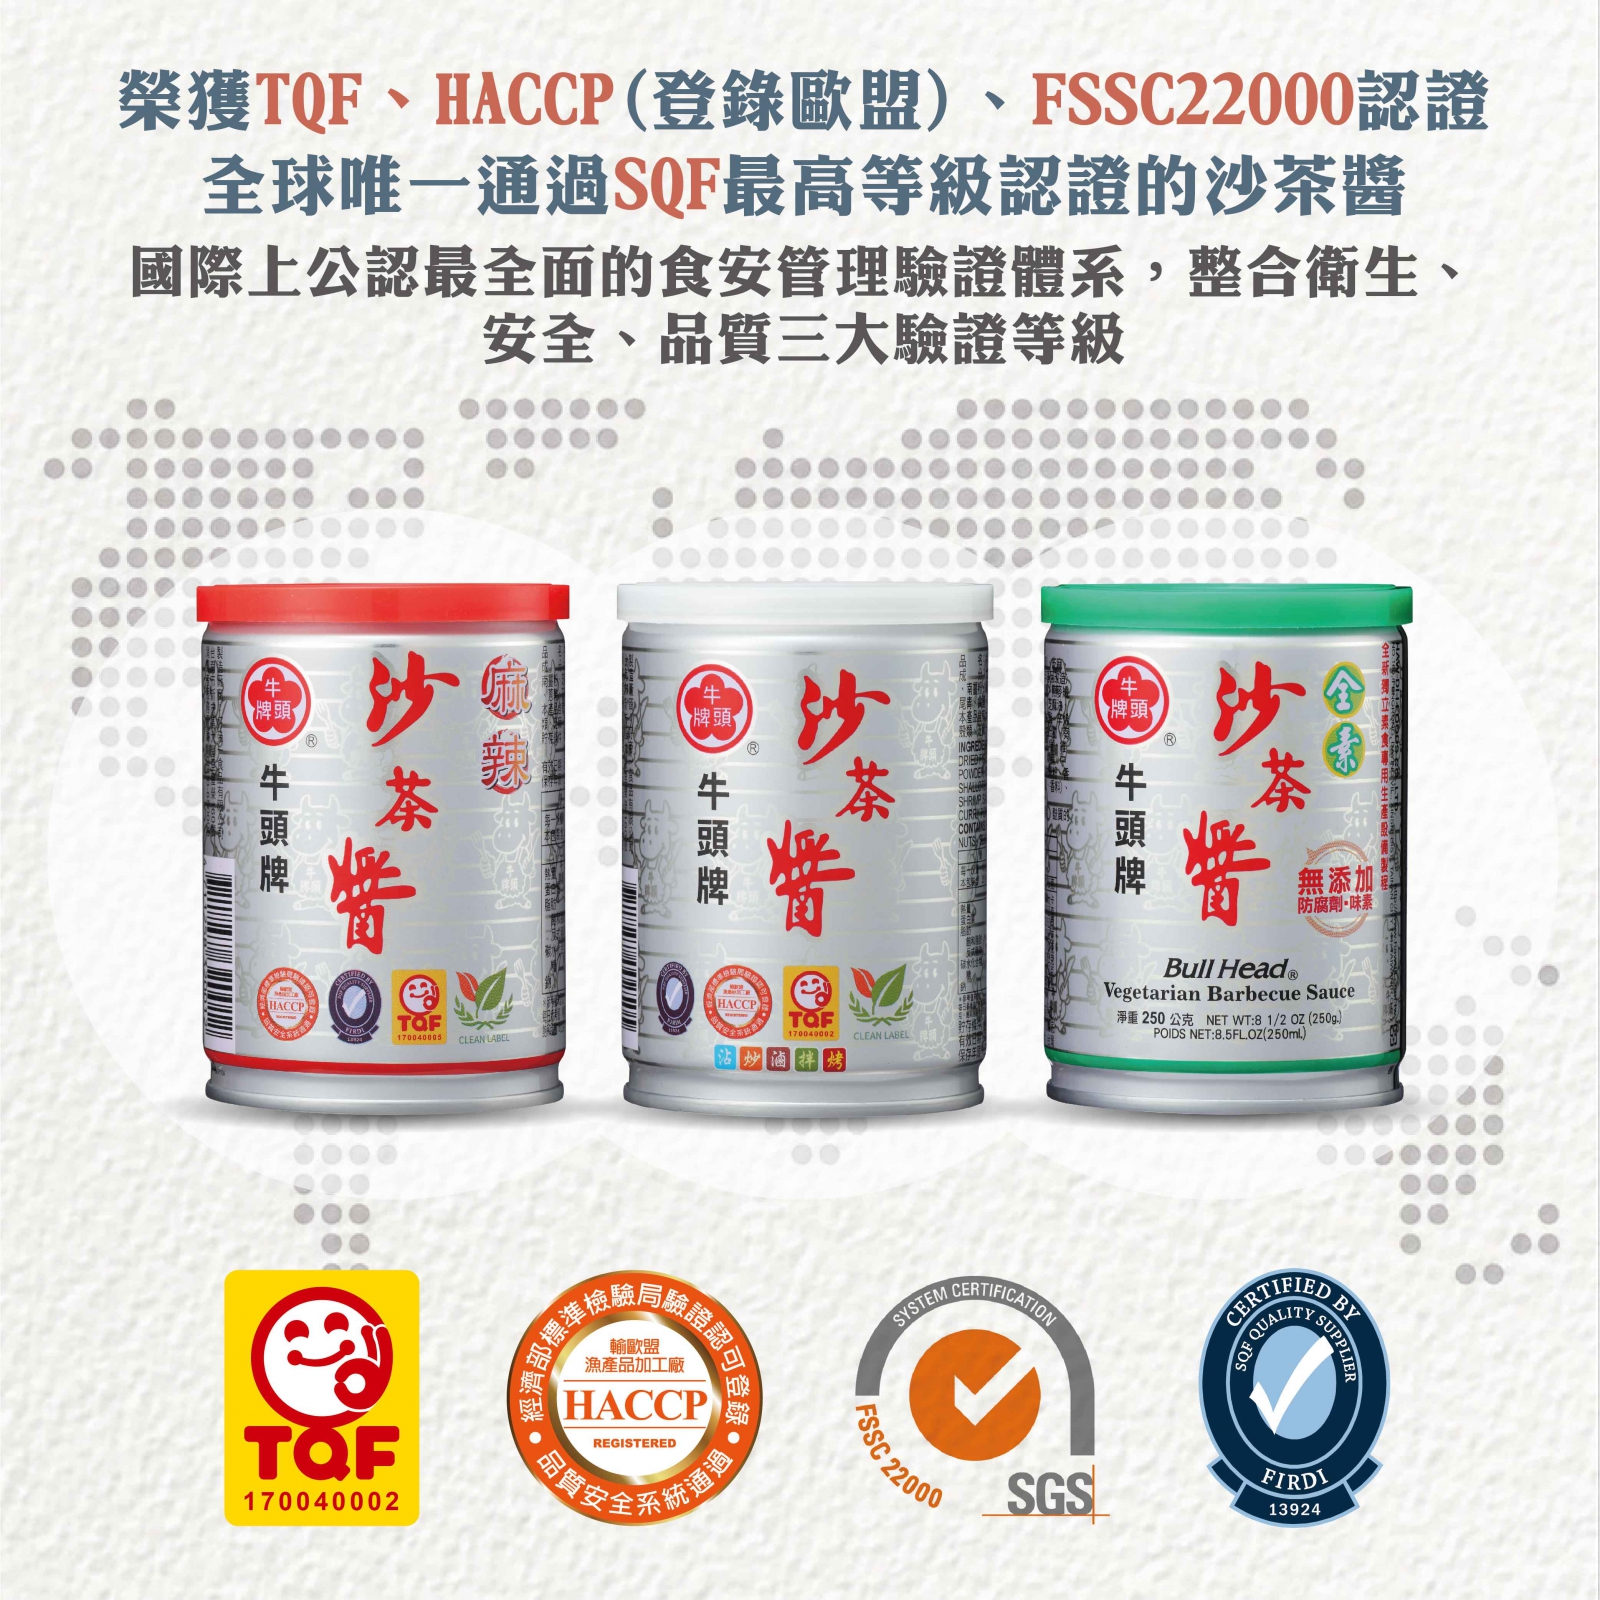 沙茶醬(麻辣)250g為全台灣唯一榮獲多方認證(TQF、HACCP(登錄歐盟)、FSSC22000、SQF與雙潔淨標章)的沙茶醬類產品。